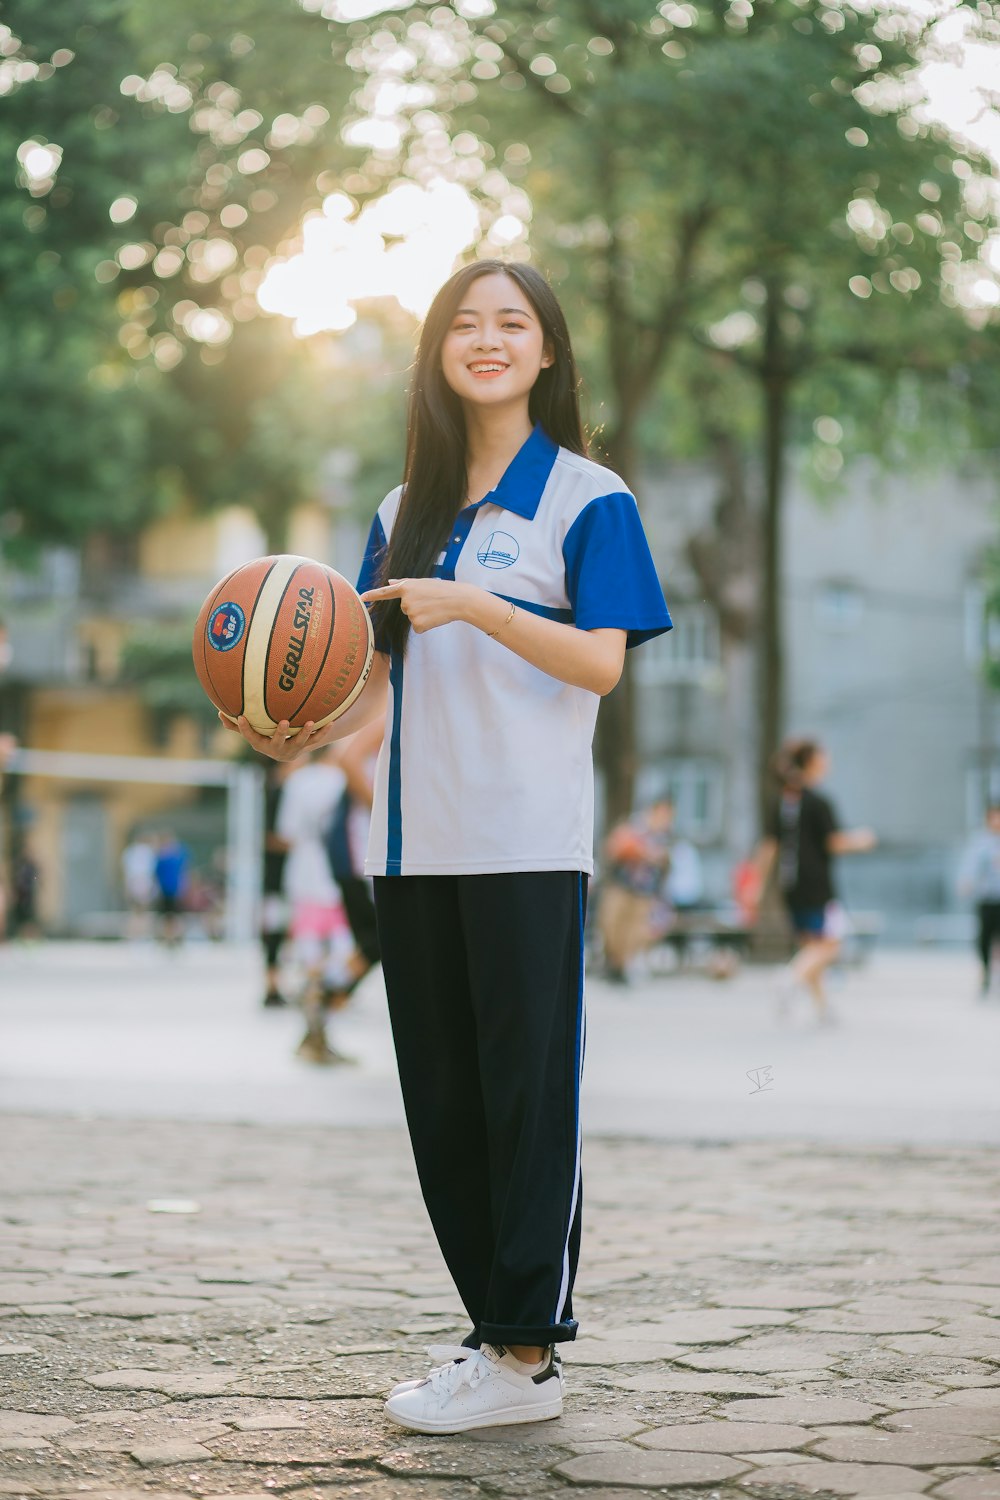 青と白の制服を着た女性がバスケットボールを手に